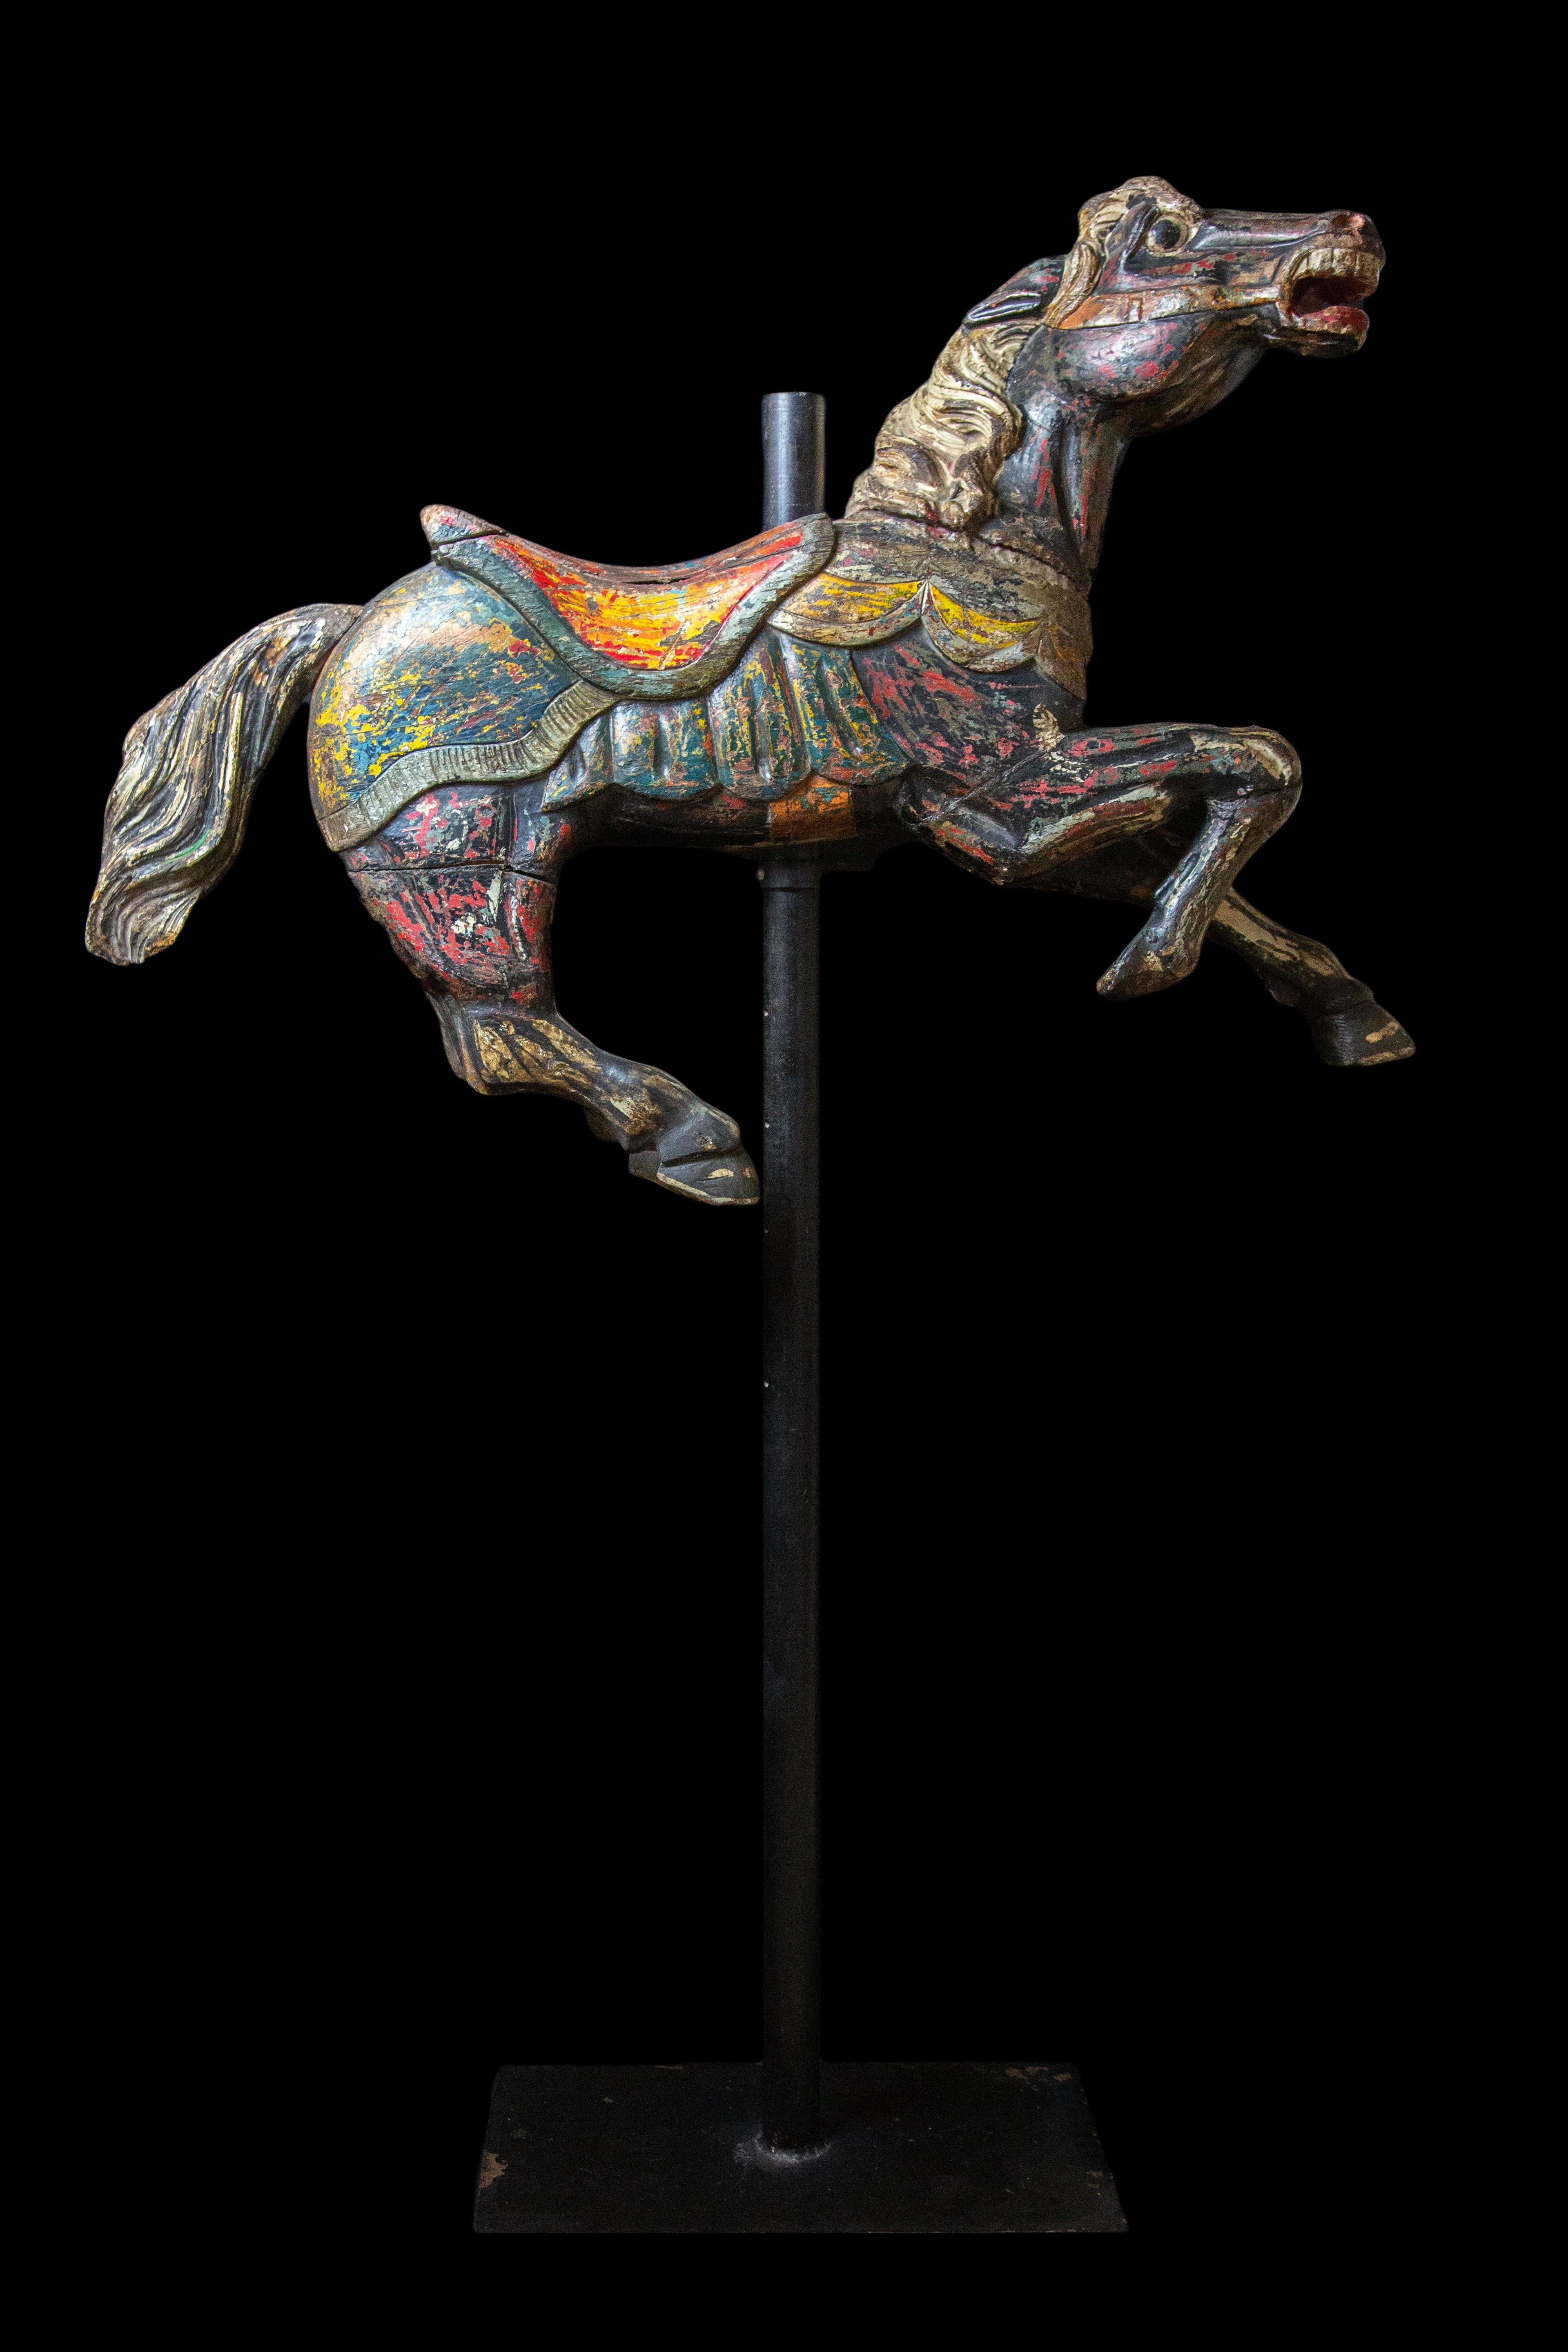 Cheval de carrousel pour enfants en bois sculpté et décoré à la peinture :

Monté sur une base métallique

Mesures : 13